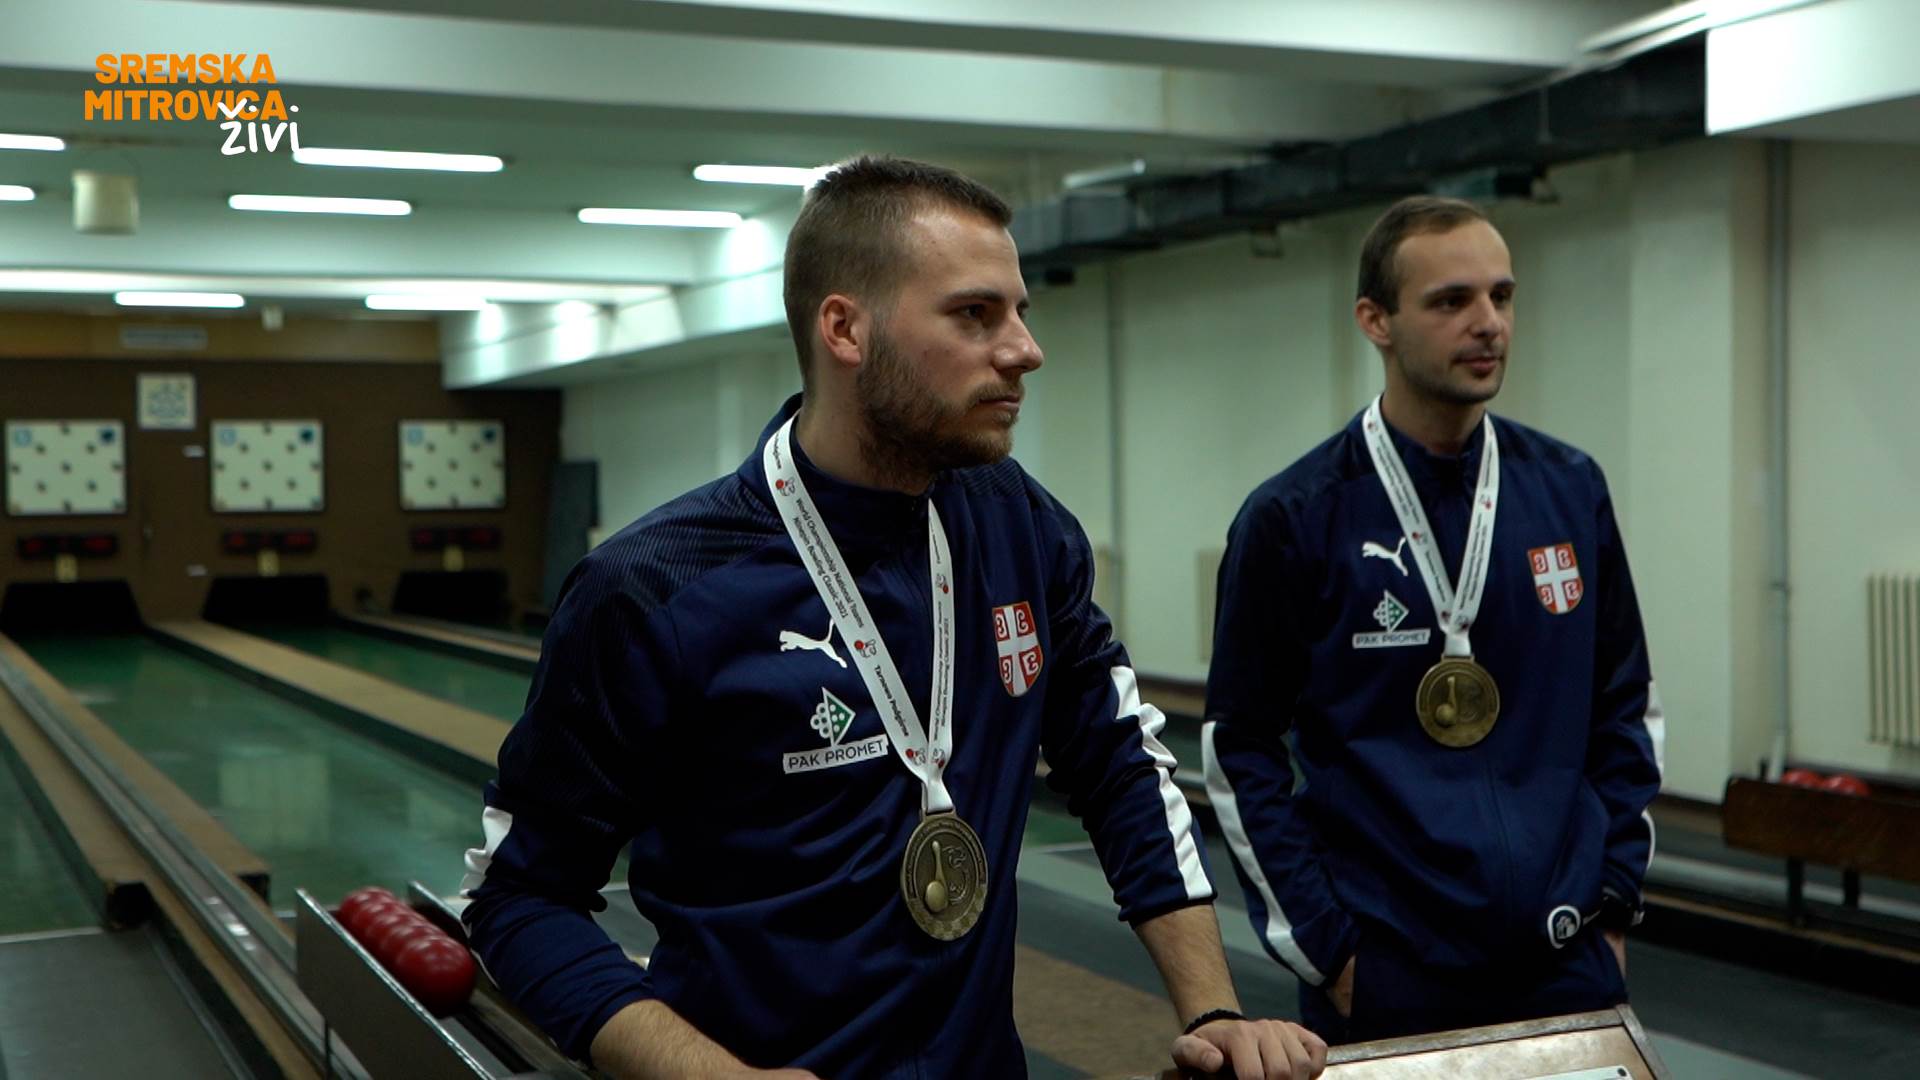  reprezentacija Srbije osvojila je zlato u kuglanju u seniorskoj muškoj konkurenciji  